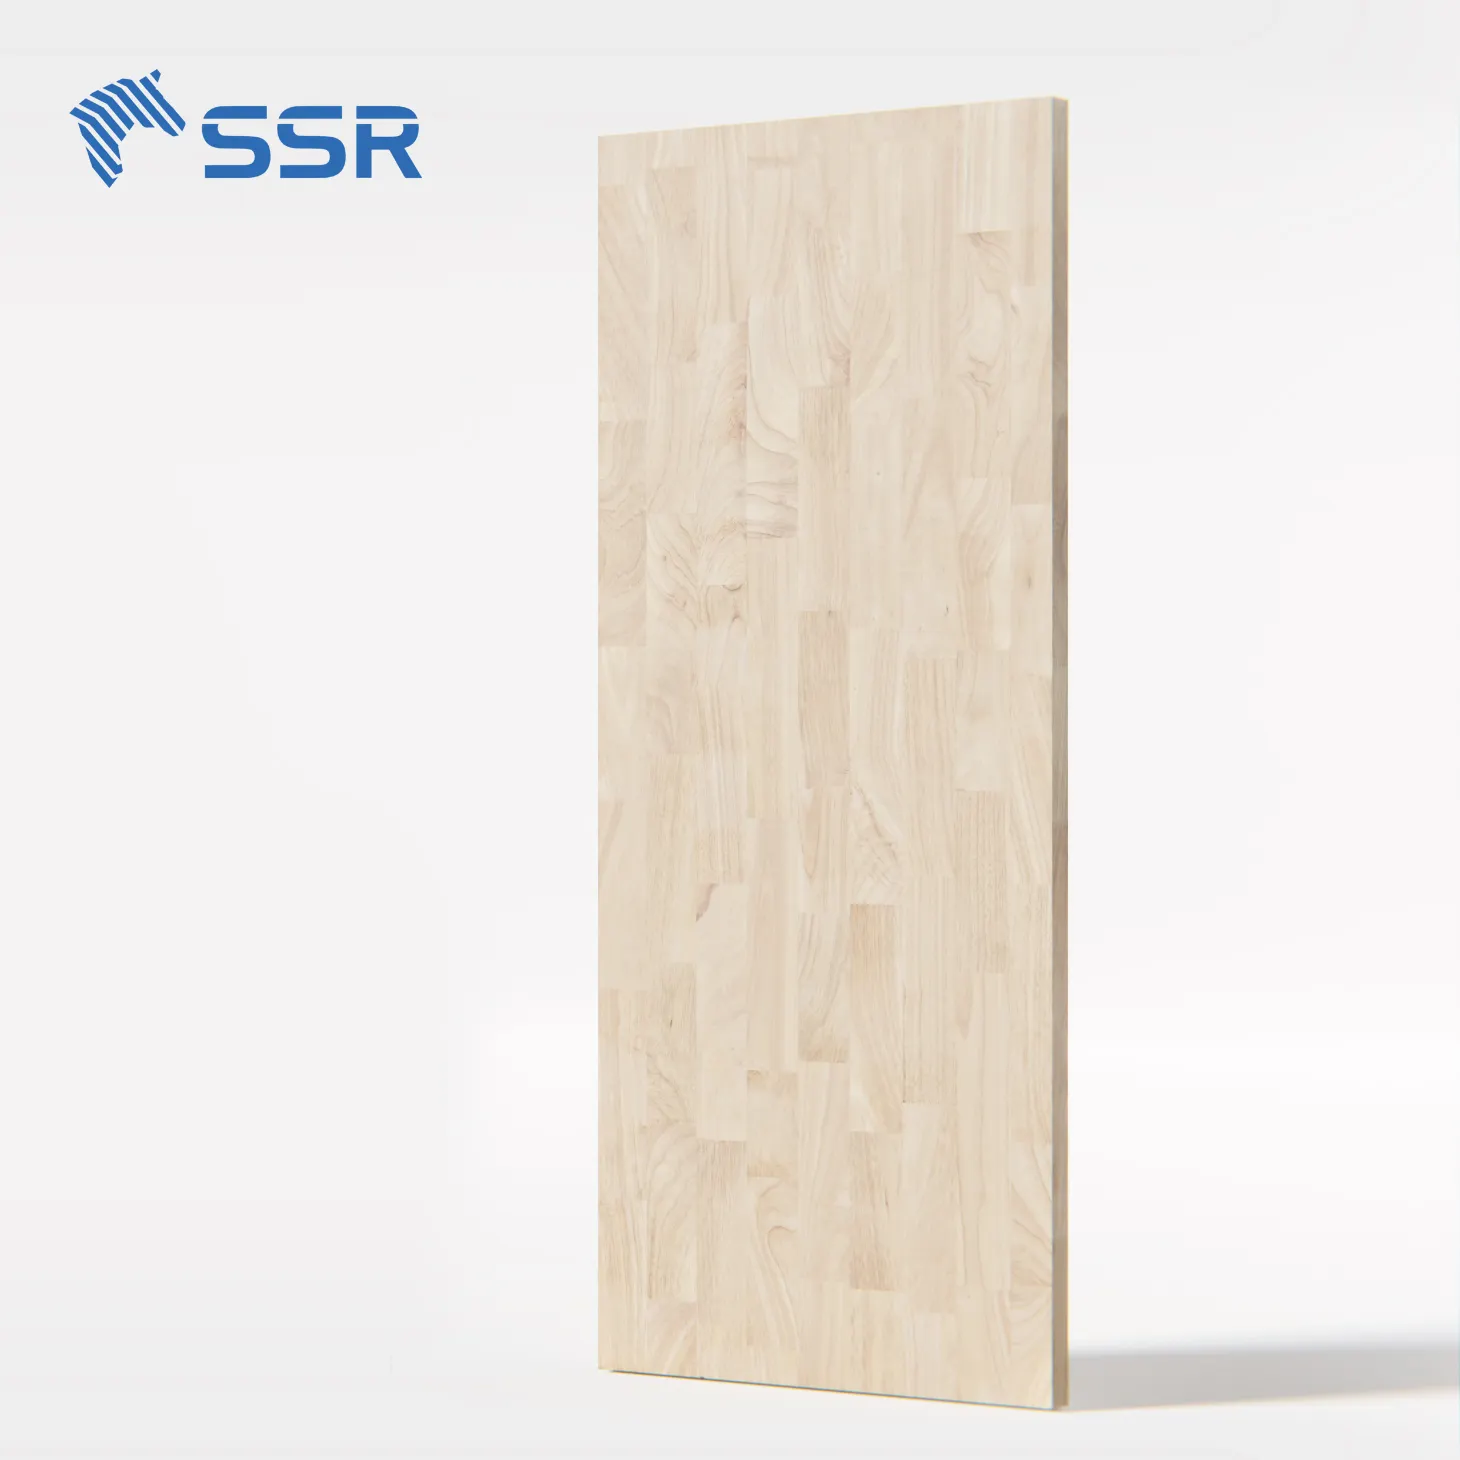 SSR VINA - Rubber Wood Finger Joint Board - finger jointed board for bathroom vanities bedroom furniture living room furniture